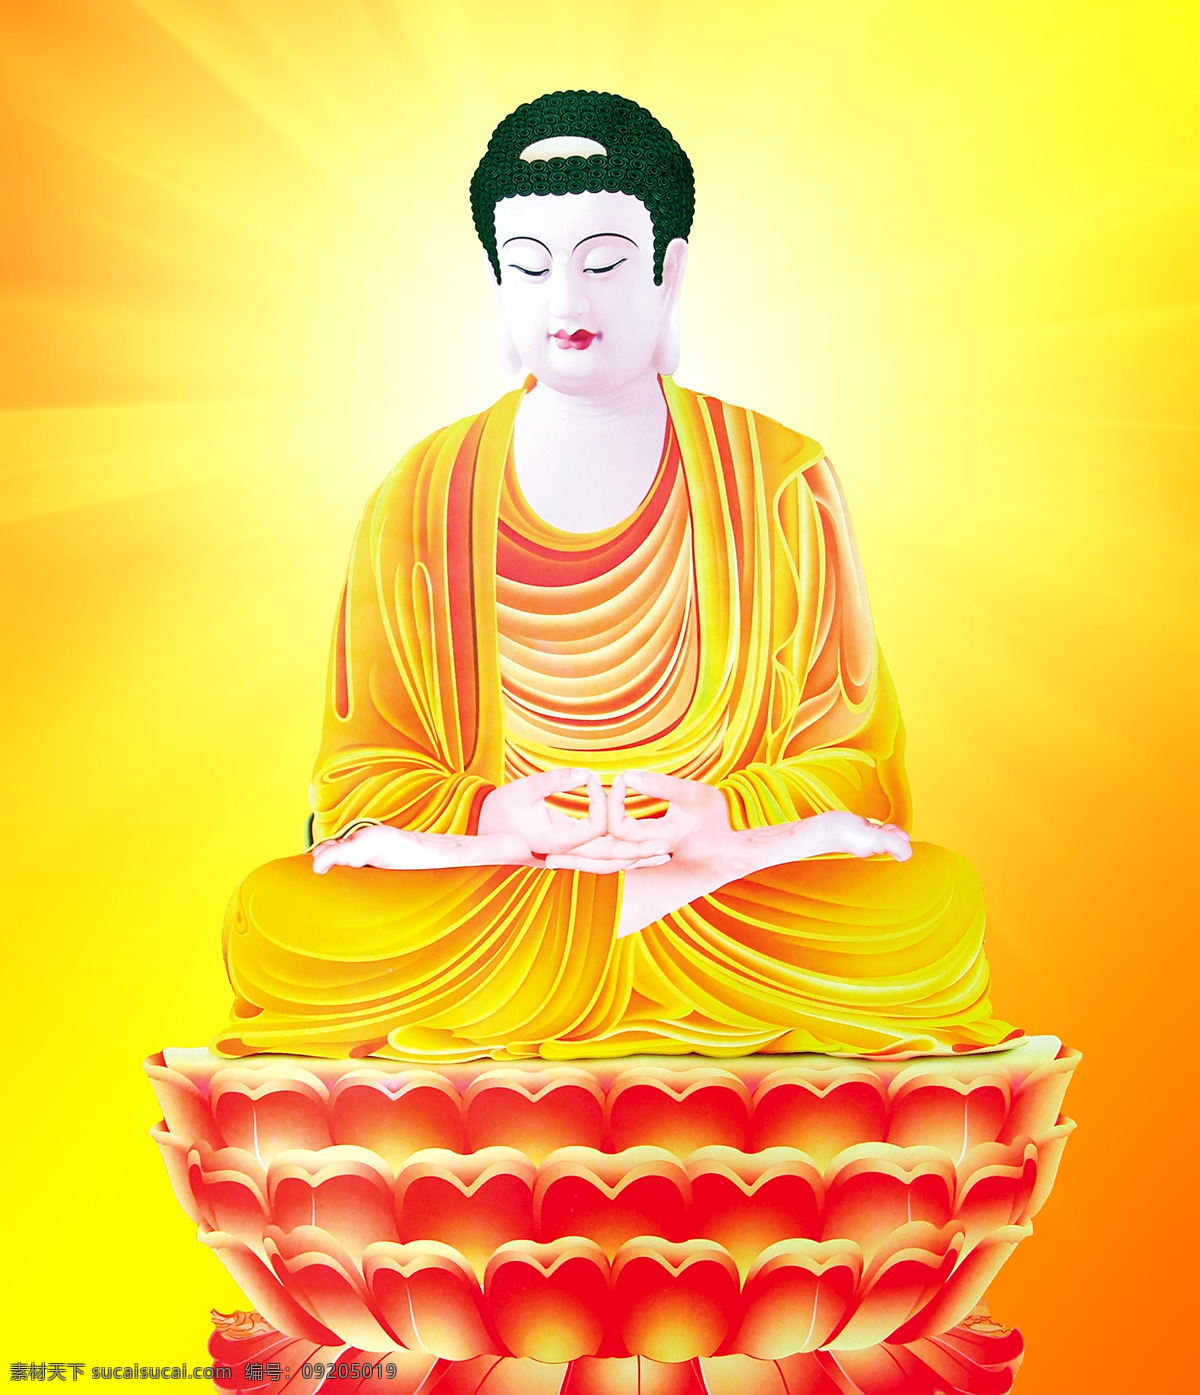 佛像 背光 佛教背景 光芒 文化艺术 宗教信仰 佛像设计素材 佛像模板下载